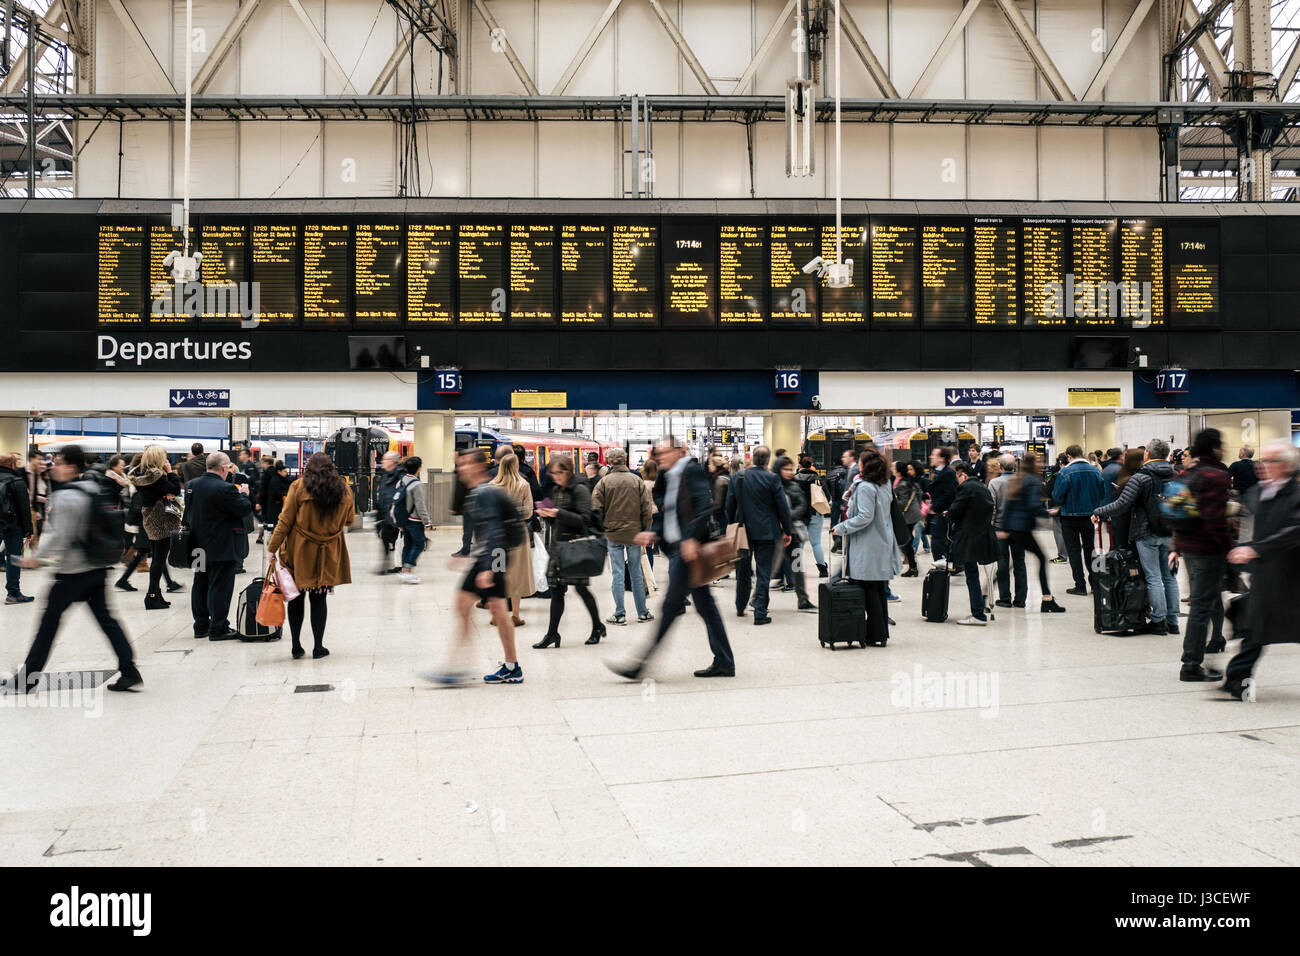 Pendler gehen vorbei an der Abfahrtstafel im Zentrum von London Waterloo Station. Stockfoto